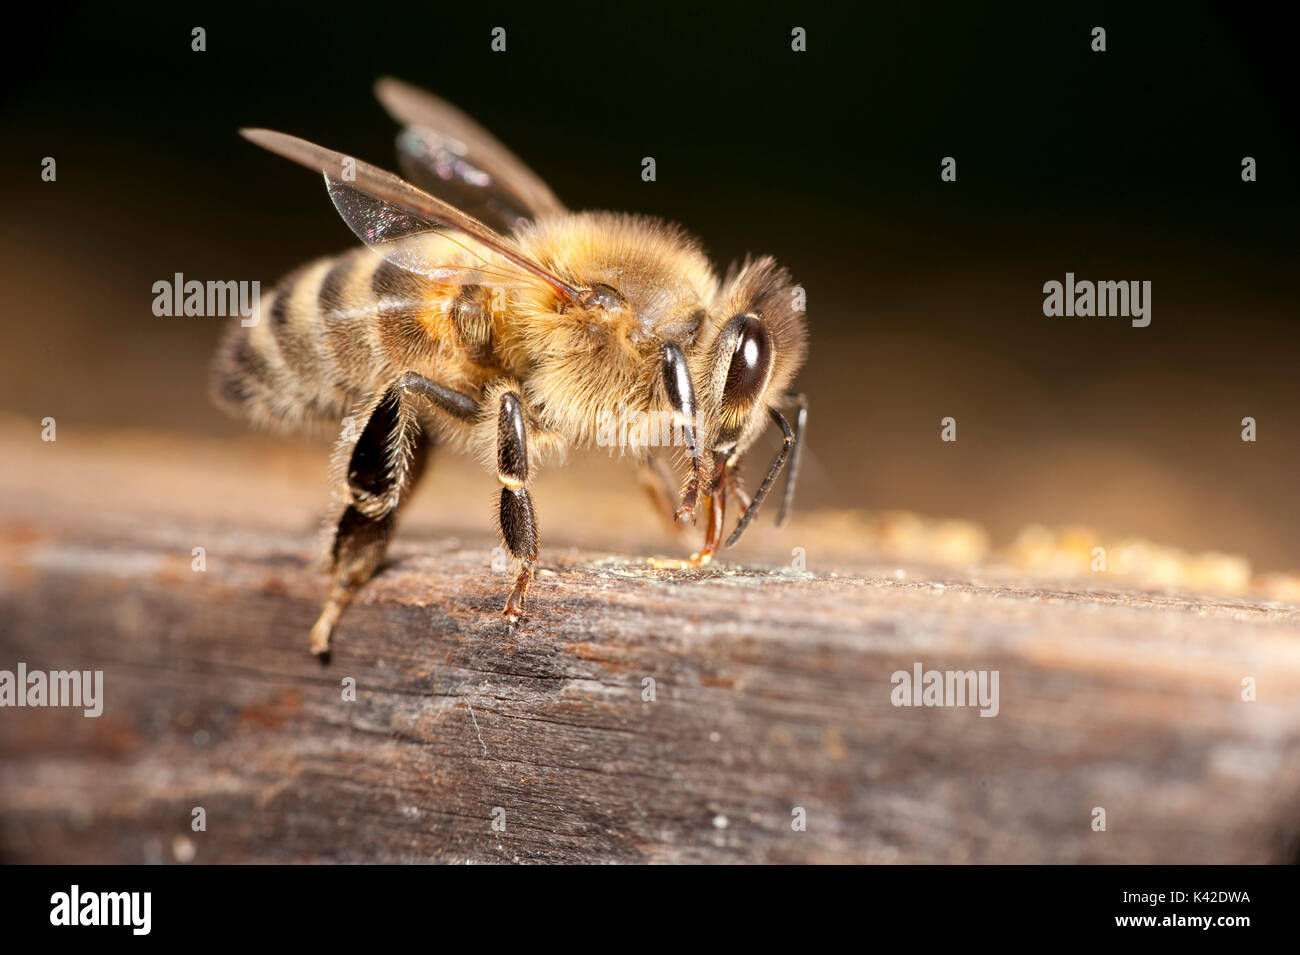 Travailleur abeille, Apis mellifera, Kent UK, sur le côté de la ruche, montrant un corps entier, les jambes, les ailes, la tête, des yeux, des antennes Banque D'Images